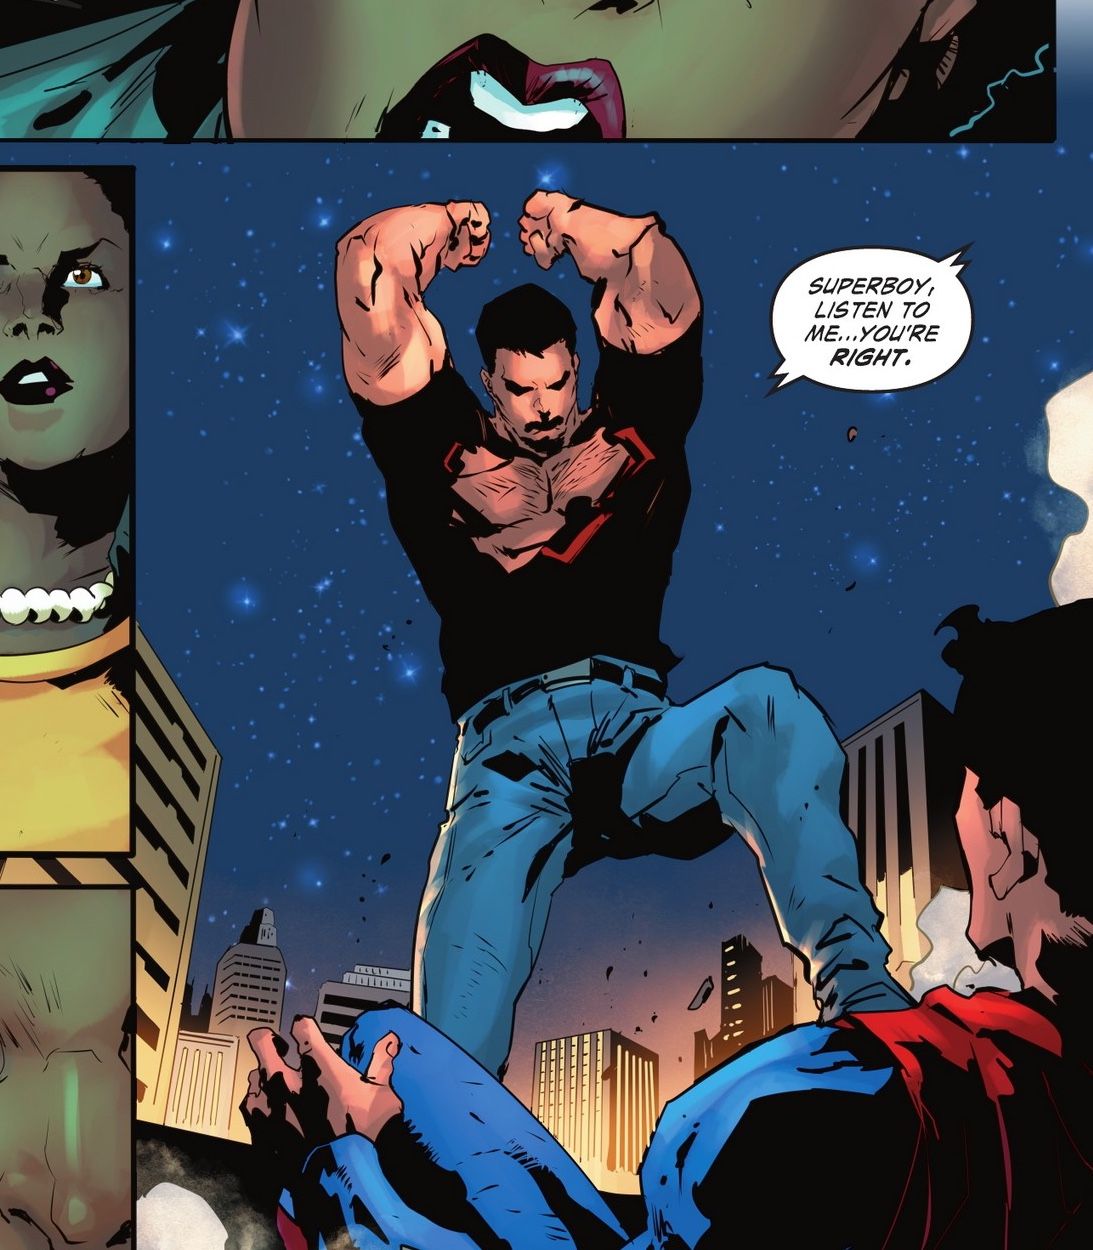 Superboy standing triumphant over Ultraman